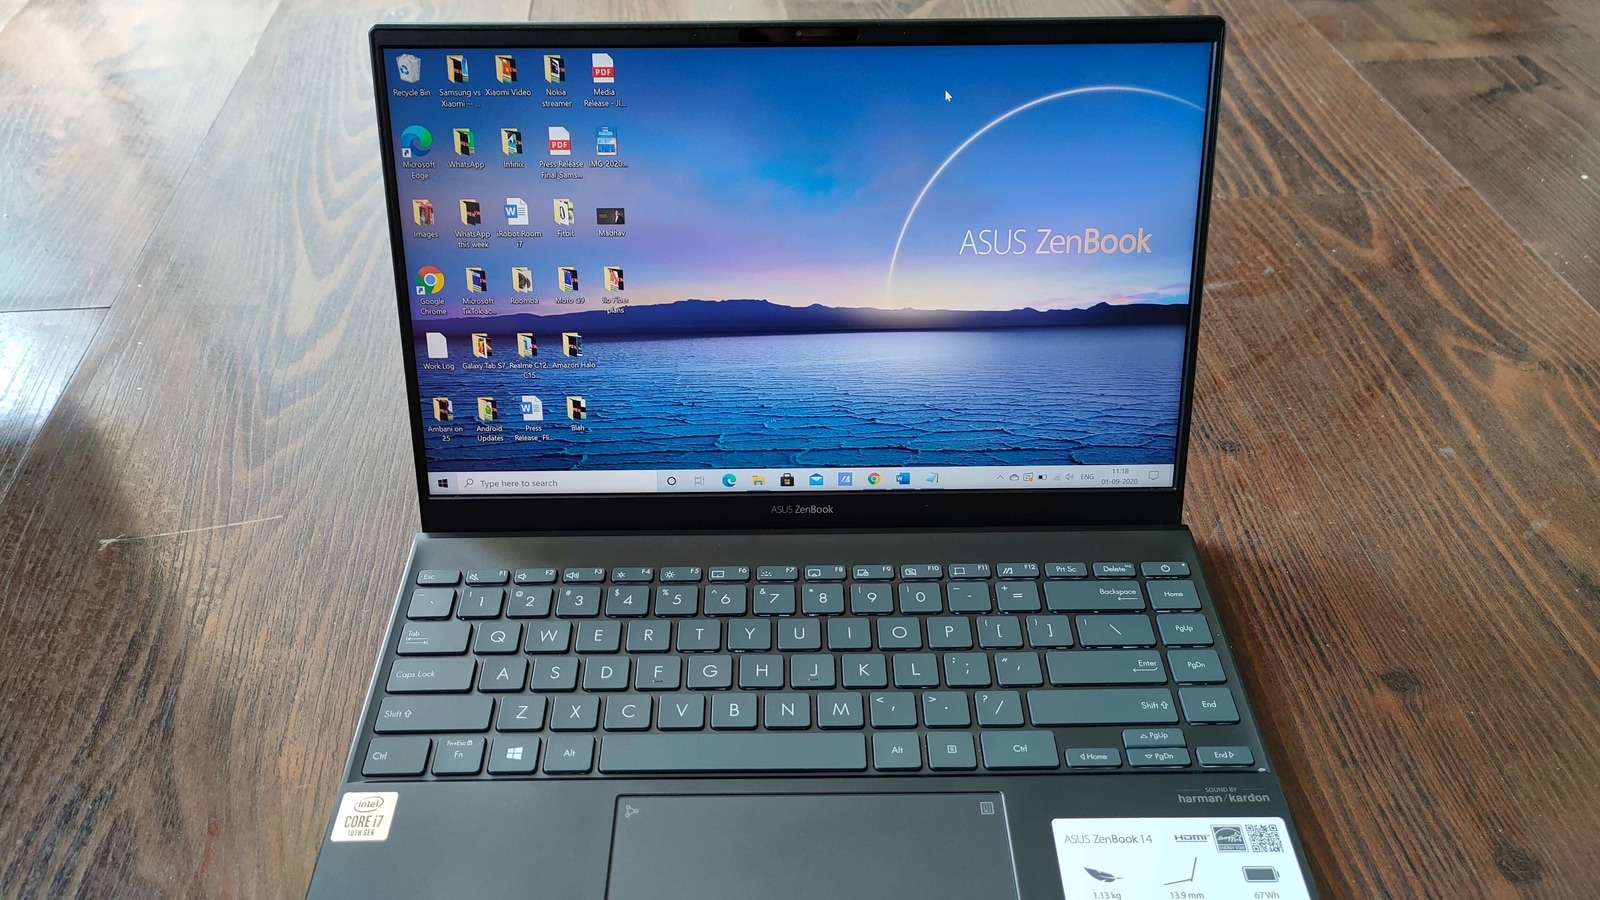 Asus Zenbook 14 Review This Sleek Lightweight Laptop Can Do It All Ht Tech